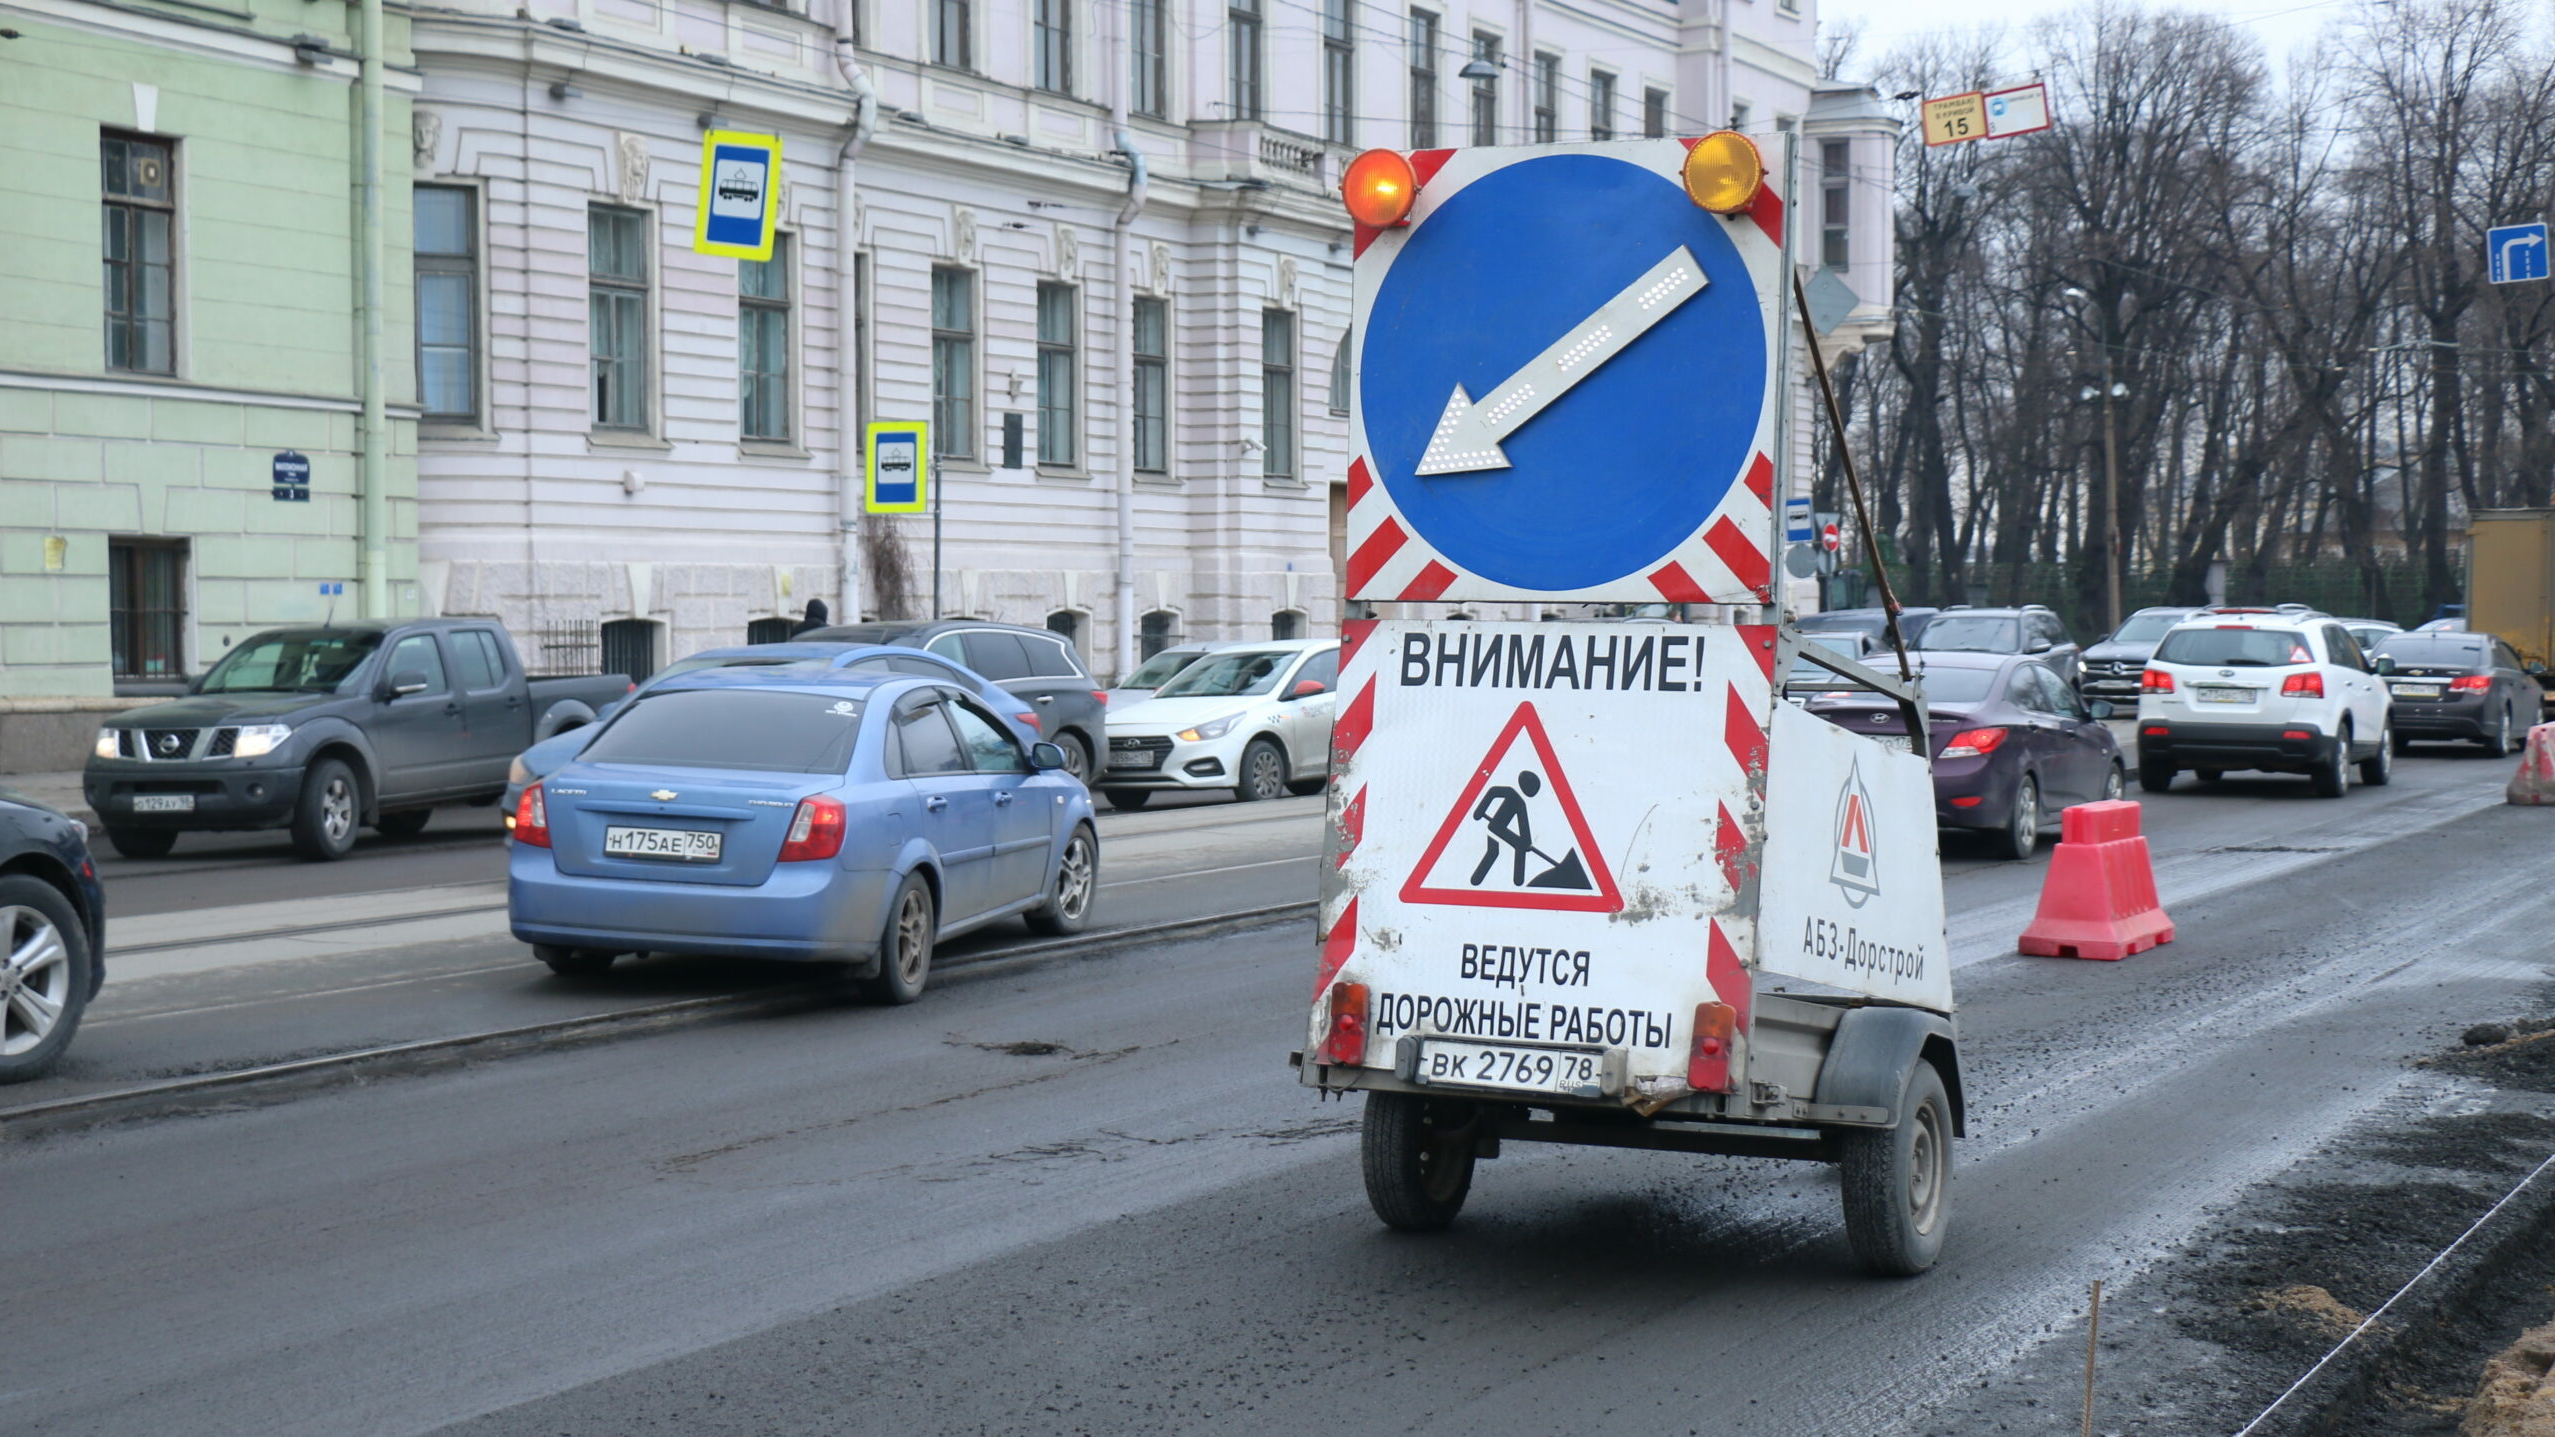 Прокуратура заставила администрацию МО Обуховского привести в порядок дорогу